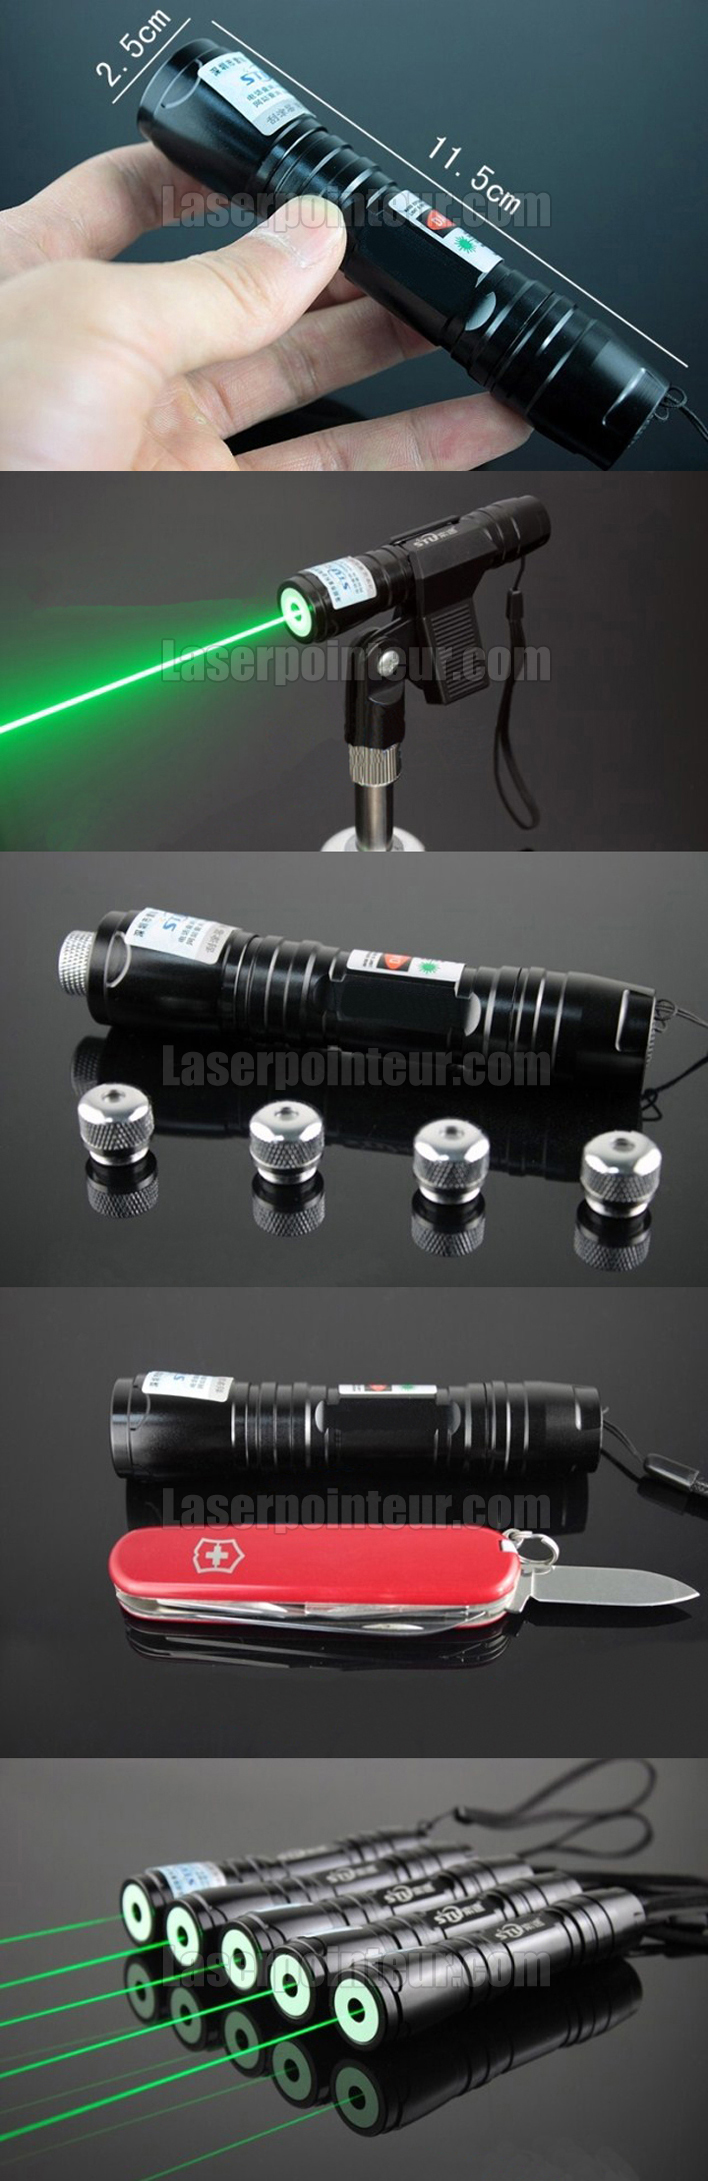 pointeur laser 200mW